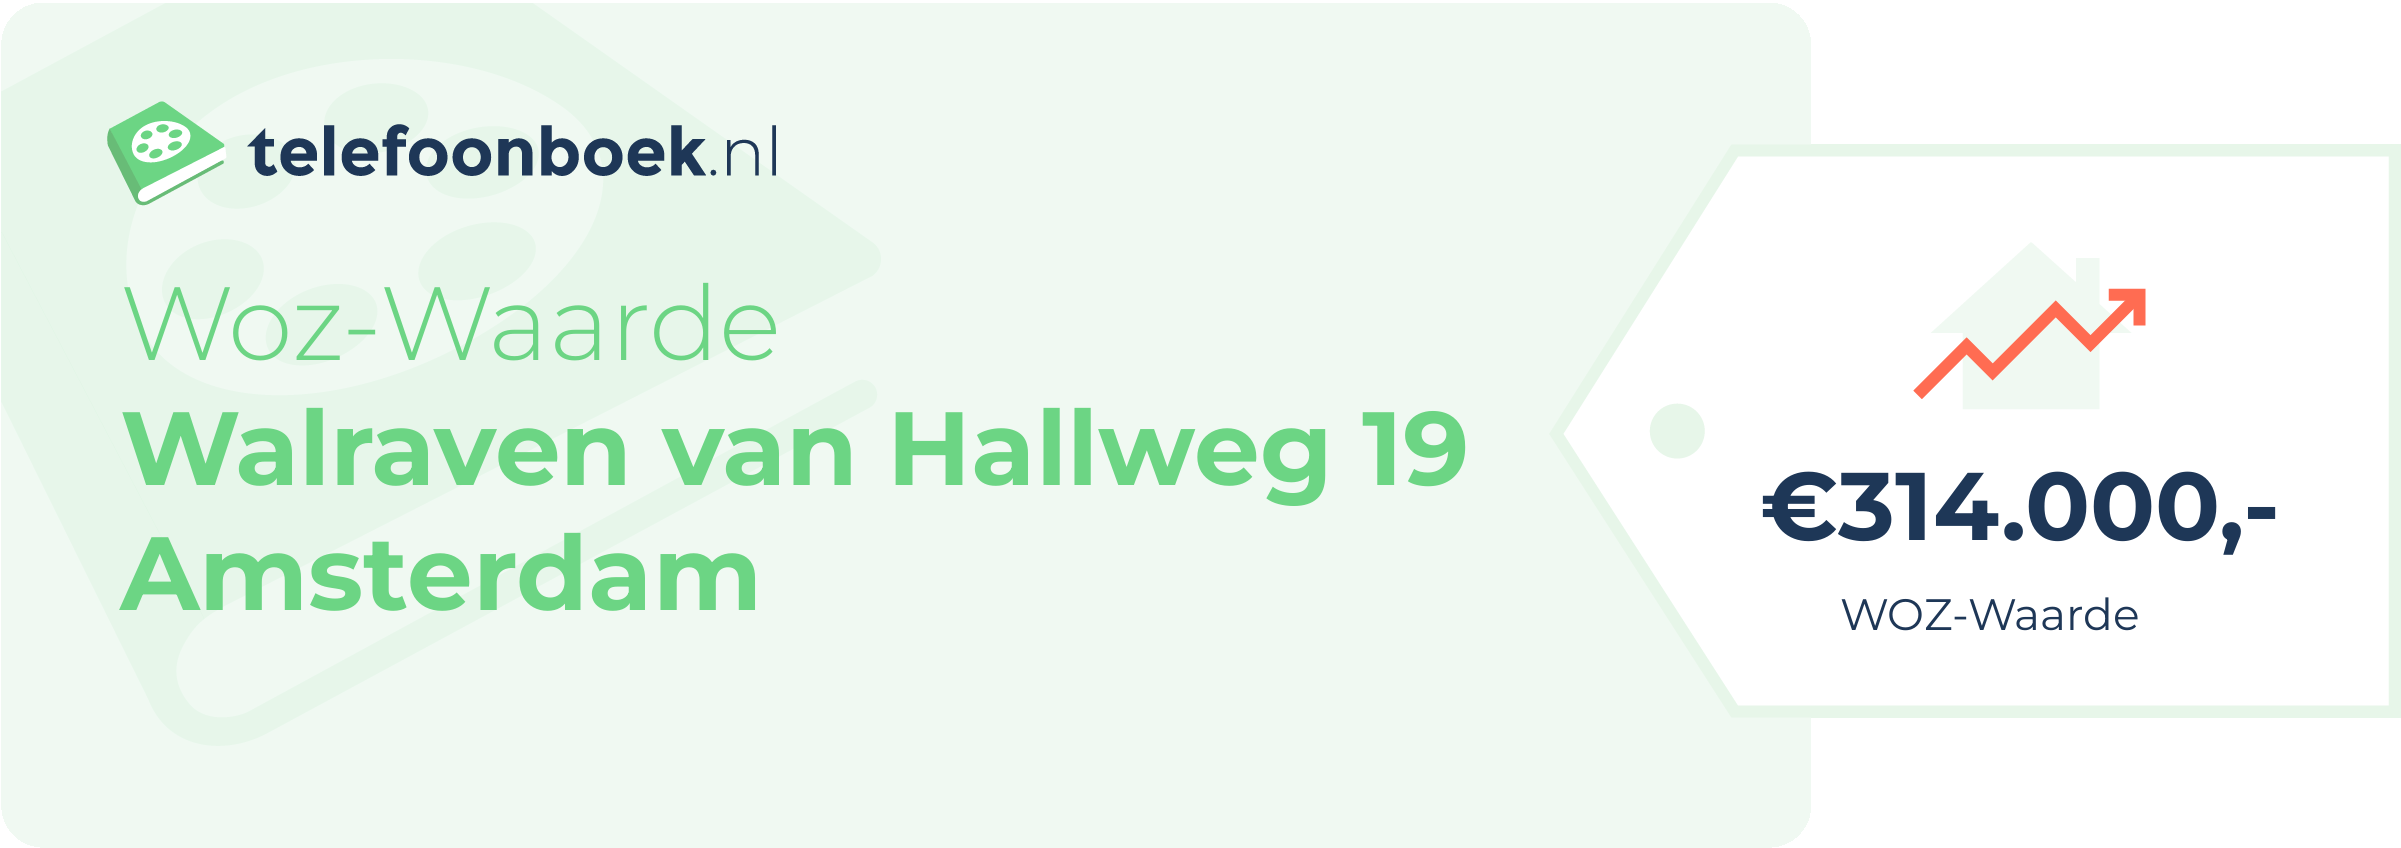 WOZ-waarde Walraven Van Hallweg 19 Amsterdam